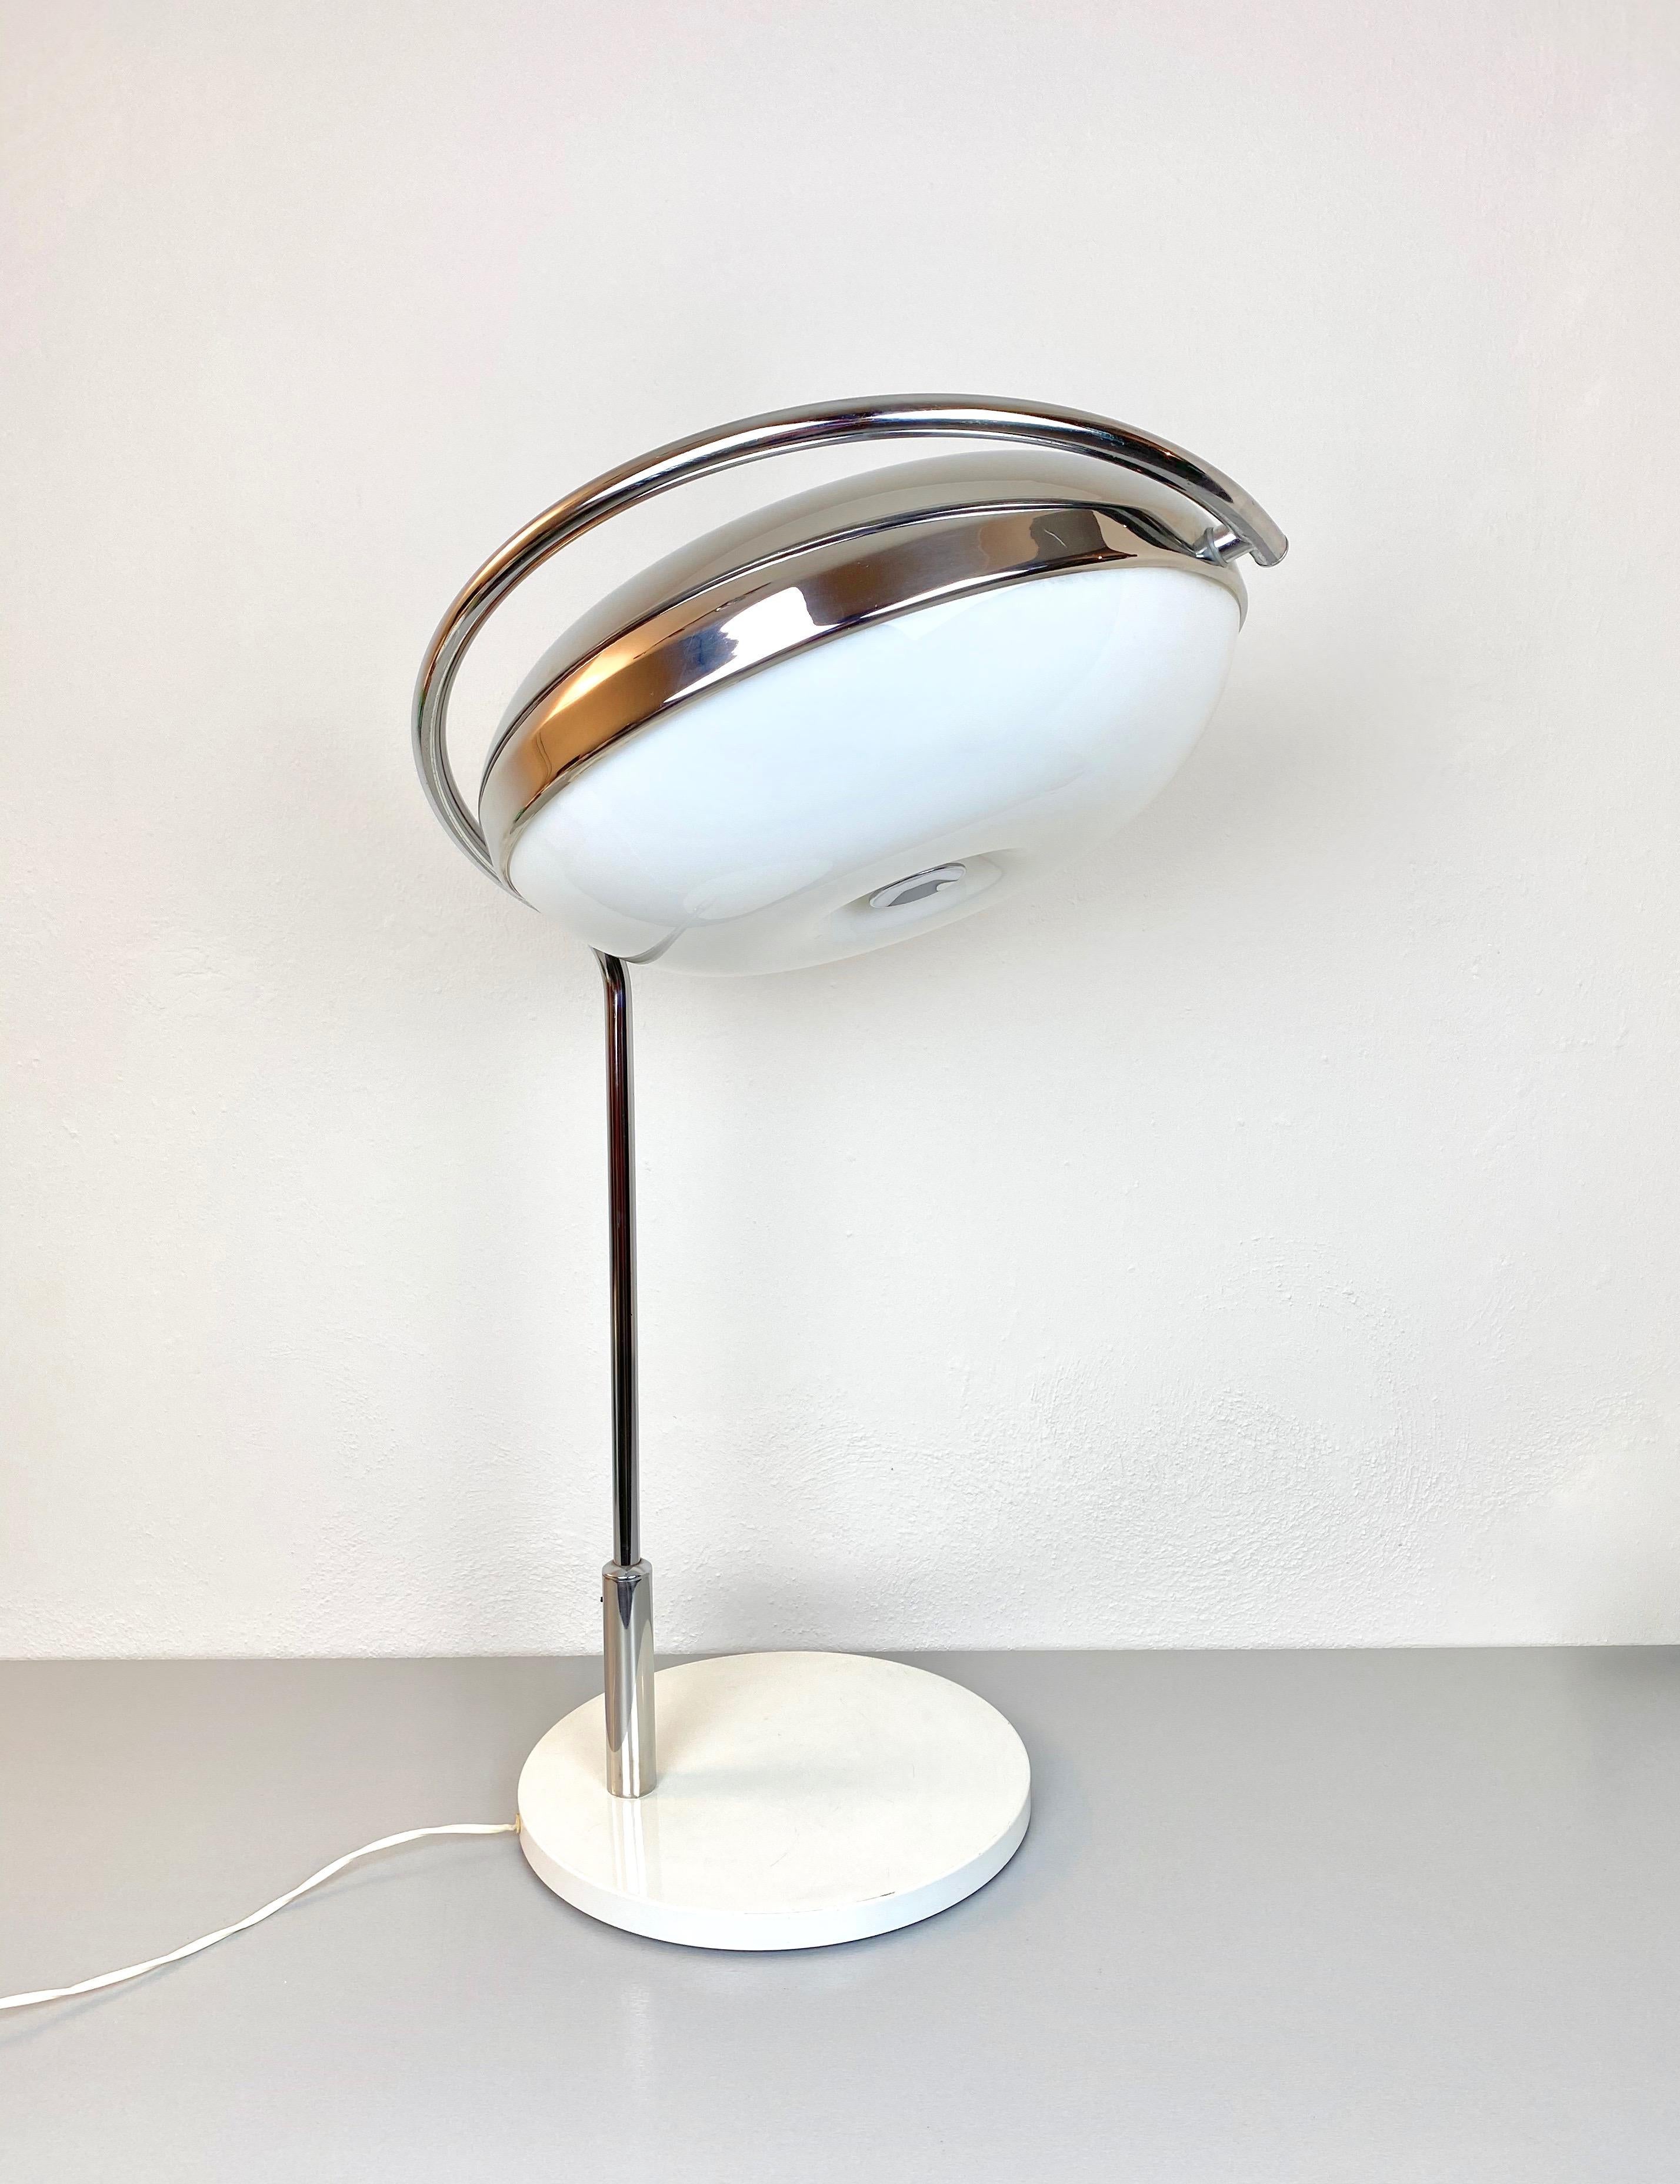 Grande lampe de table en chrome et plexiglas du designer italien Reggiani, années 1970. 
La direction de la lumière peut être ajustée selon les besoins. 

Signé sur le bas 